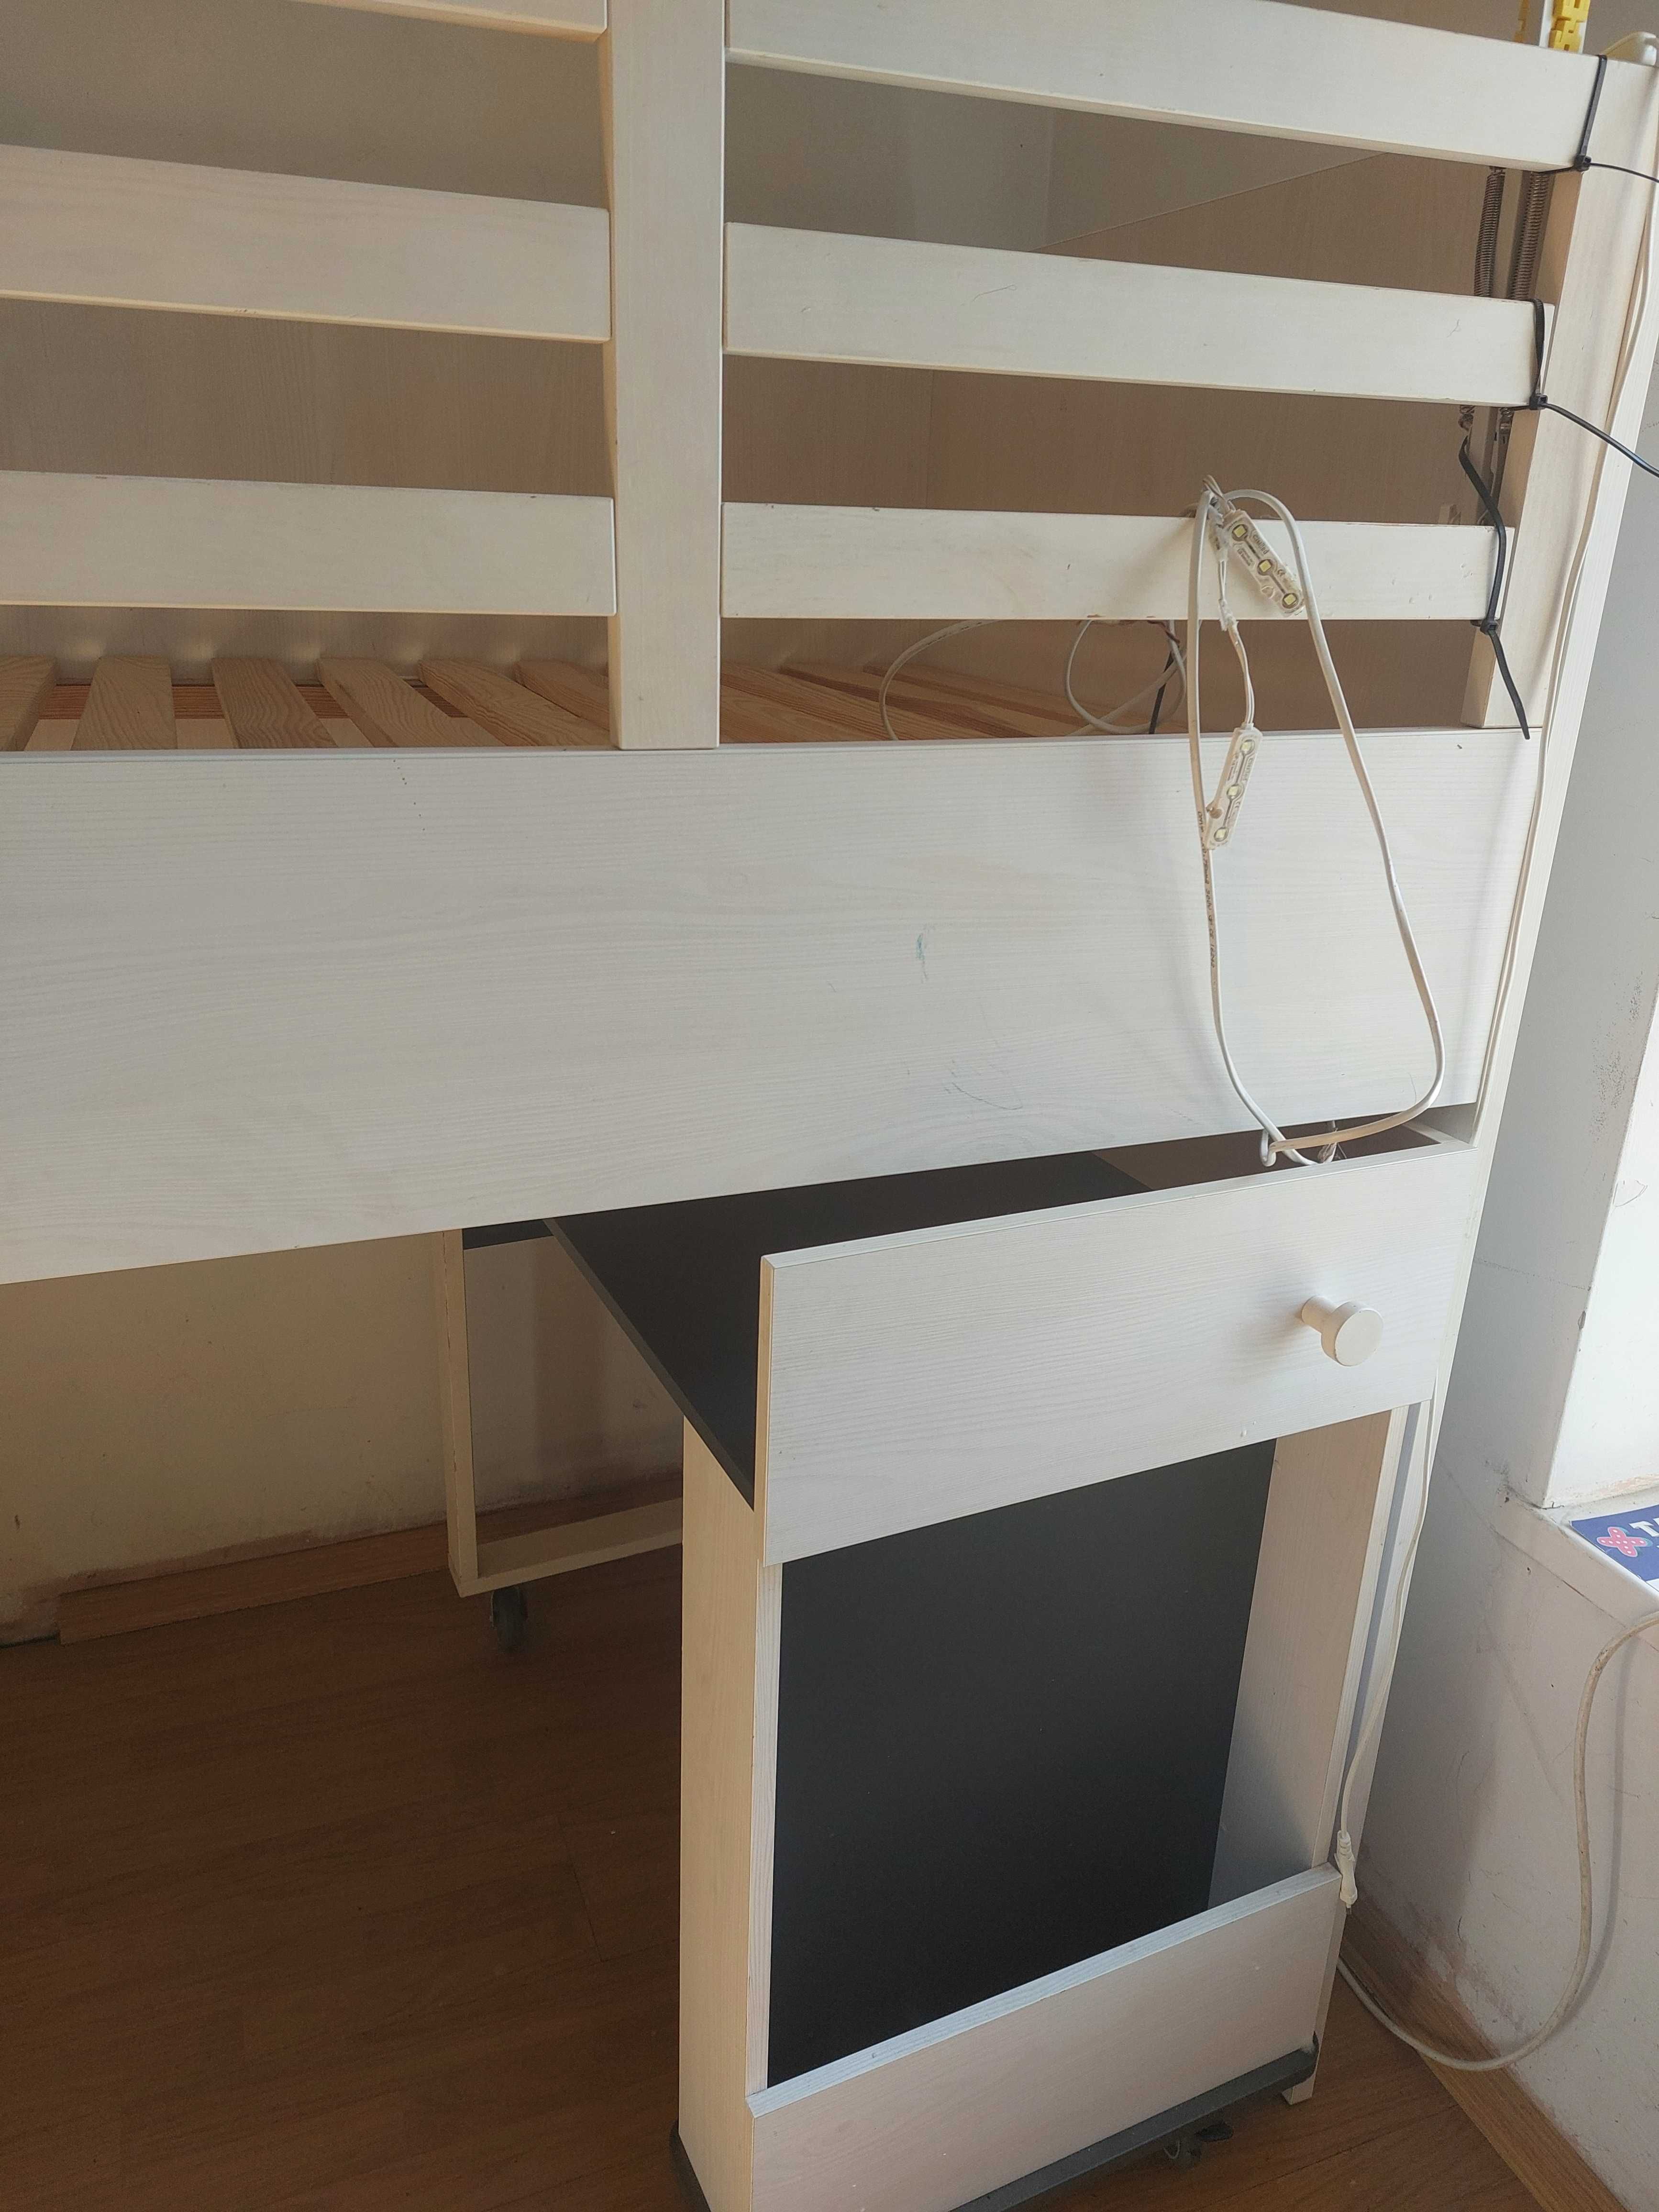 Łóżko BRW uzywane pietrowe i biurko wysuwane